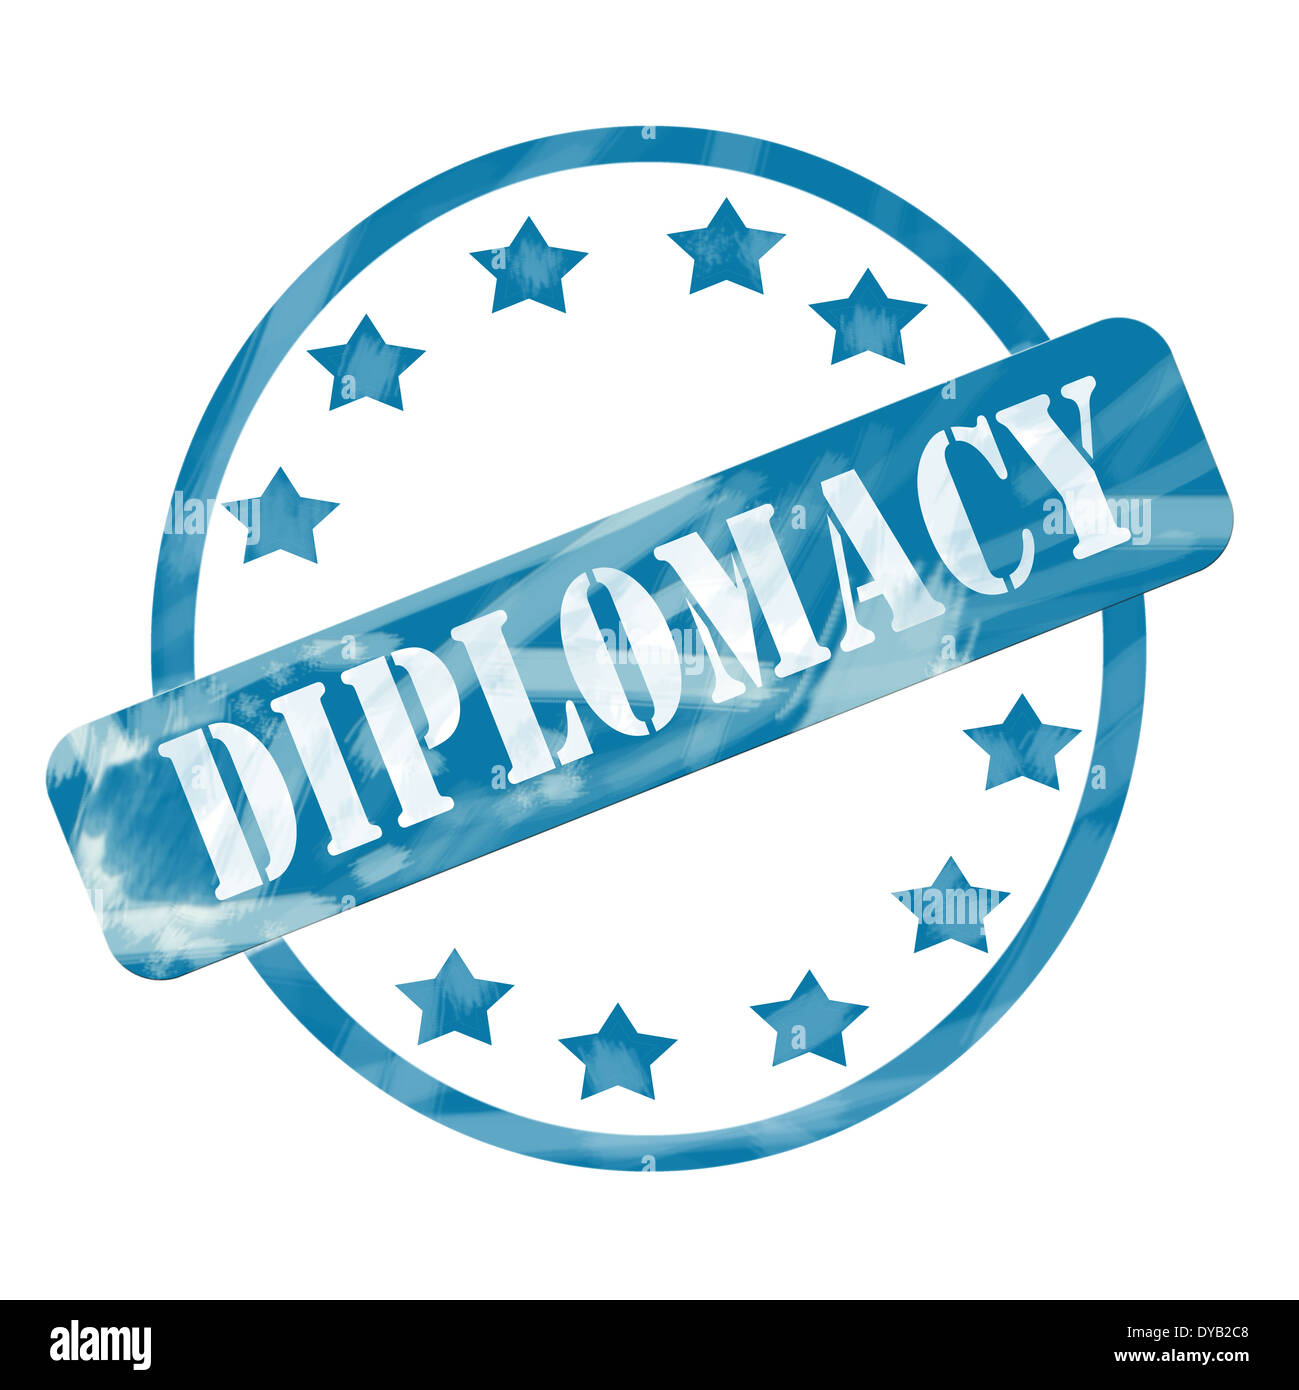 Ein blauer Tinte verwitterte aufgeraut, Kreis und Sterne Stempel Design mit dem Wort Diplomatie darauf machen ein tolles Konzept. Stockfoto